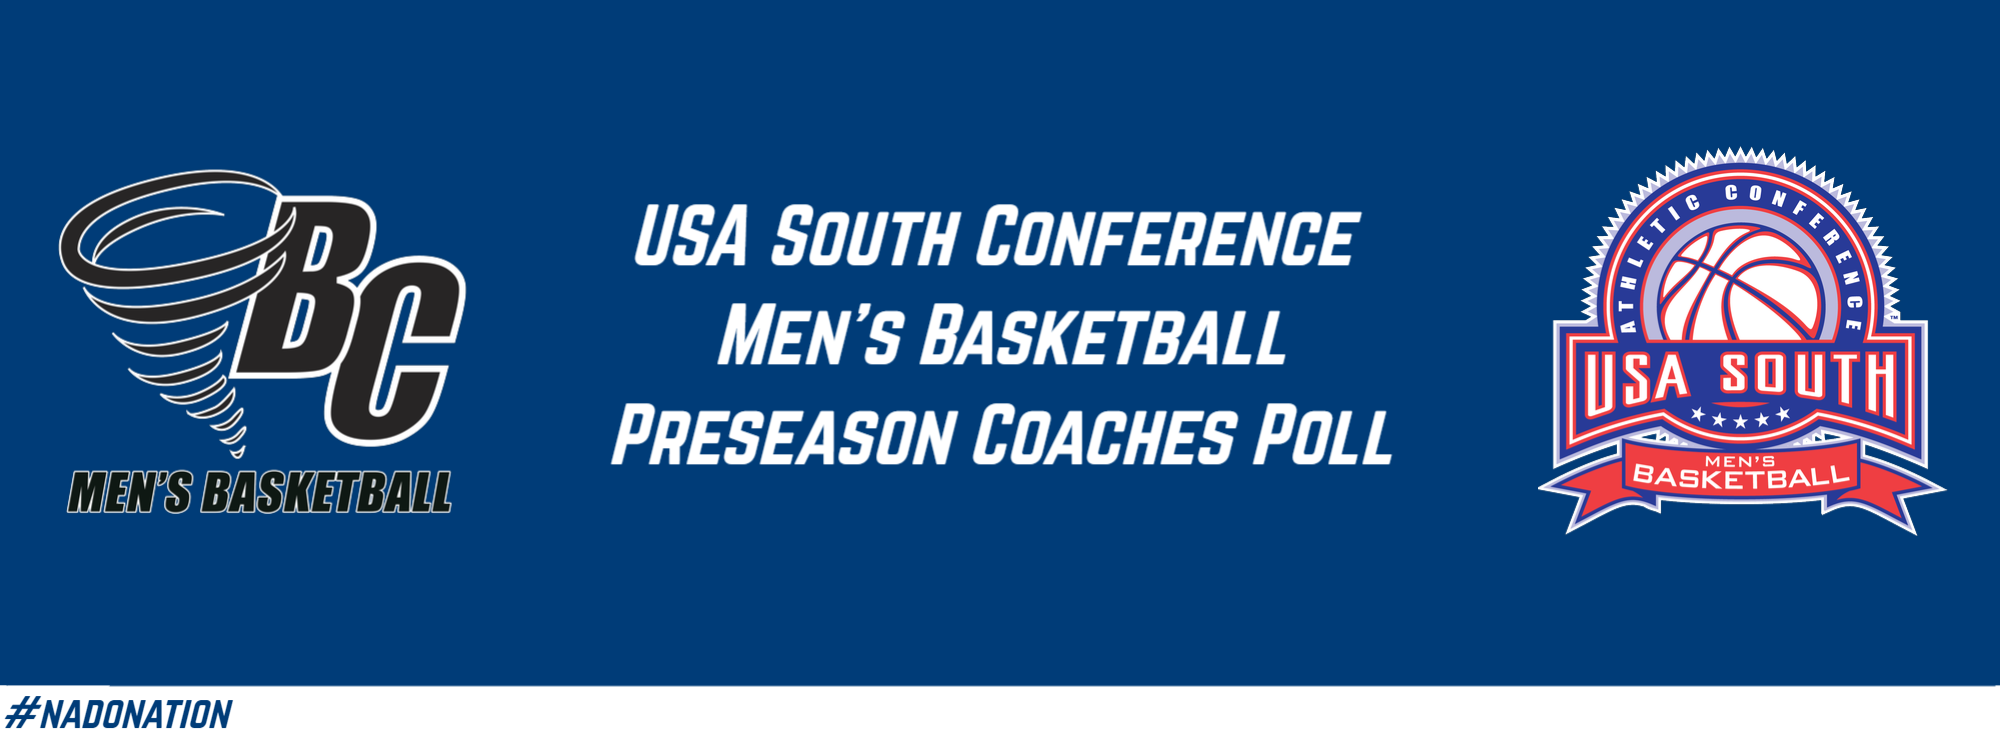 USA South Releases Preseason Coaches Poll for Men’s Basketball